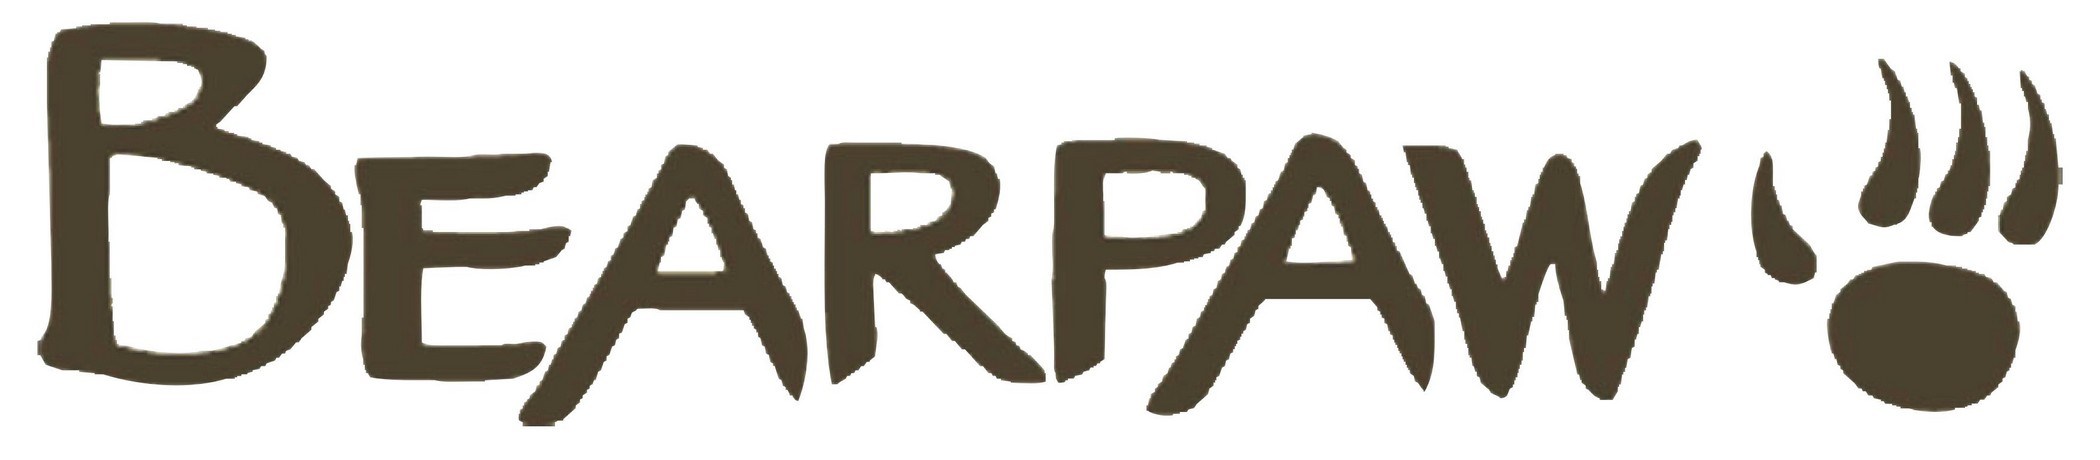 Bearpaw Logo [EPS File]